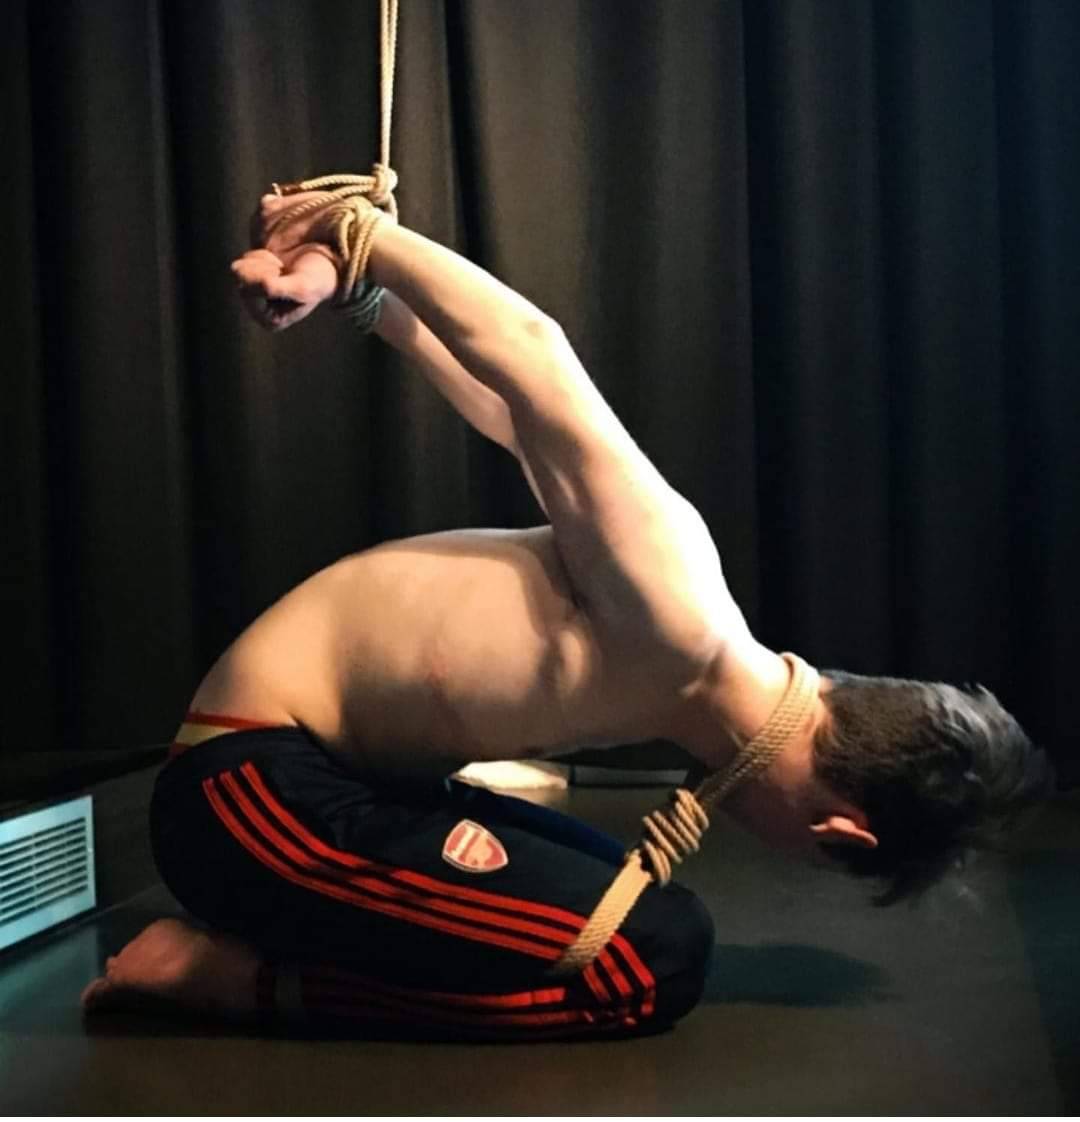 Awesome stress bondage position.